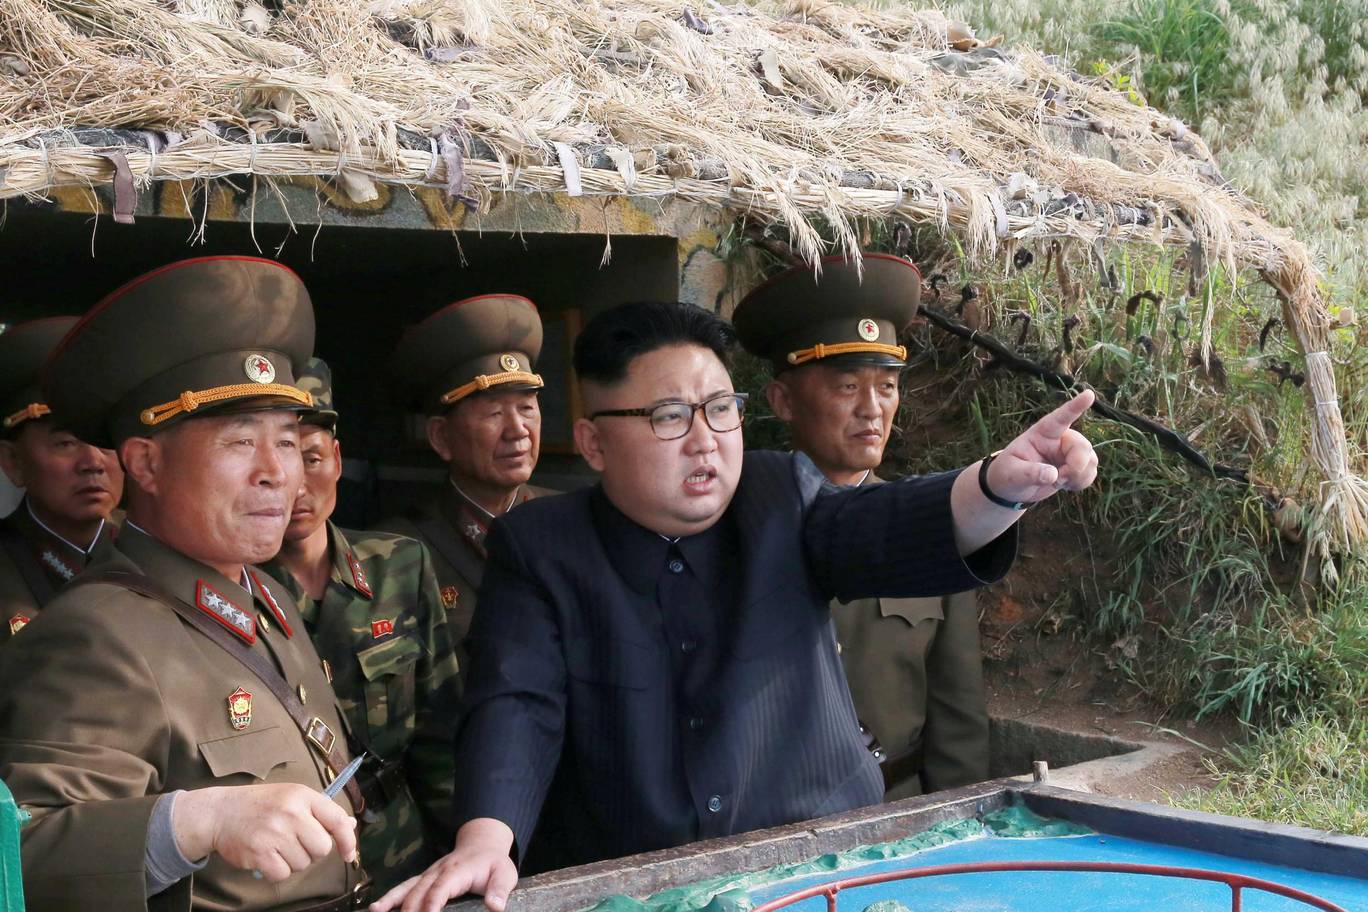 شاهد ما سيكون عليك فعله إن كنت أحد حراس أمن زعيم كوريا الشمالية 6